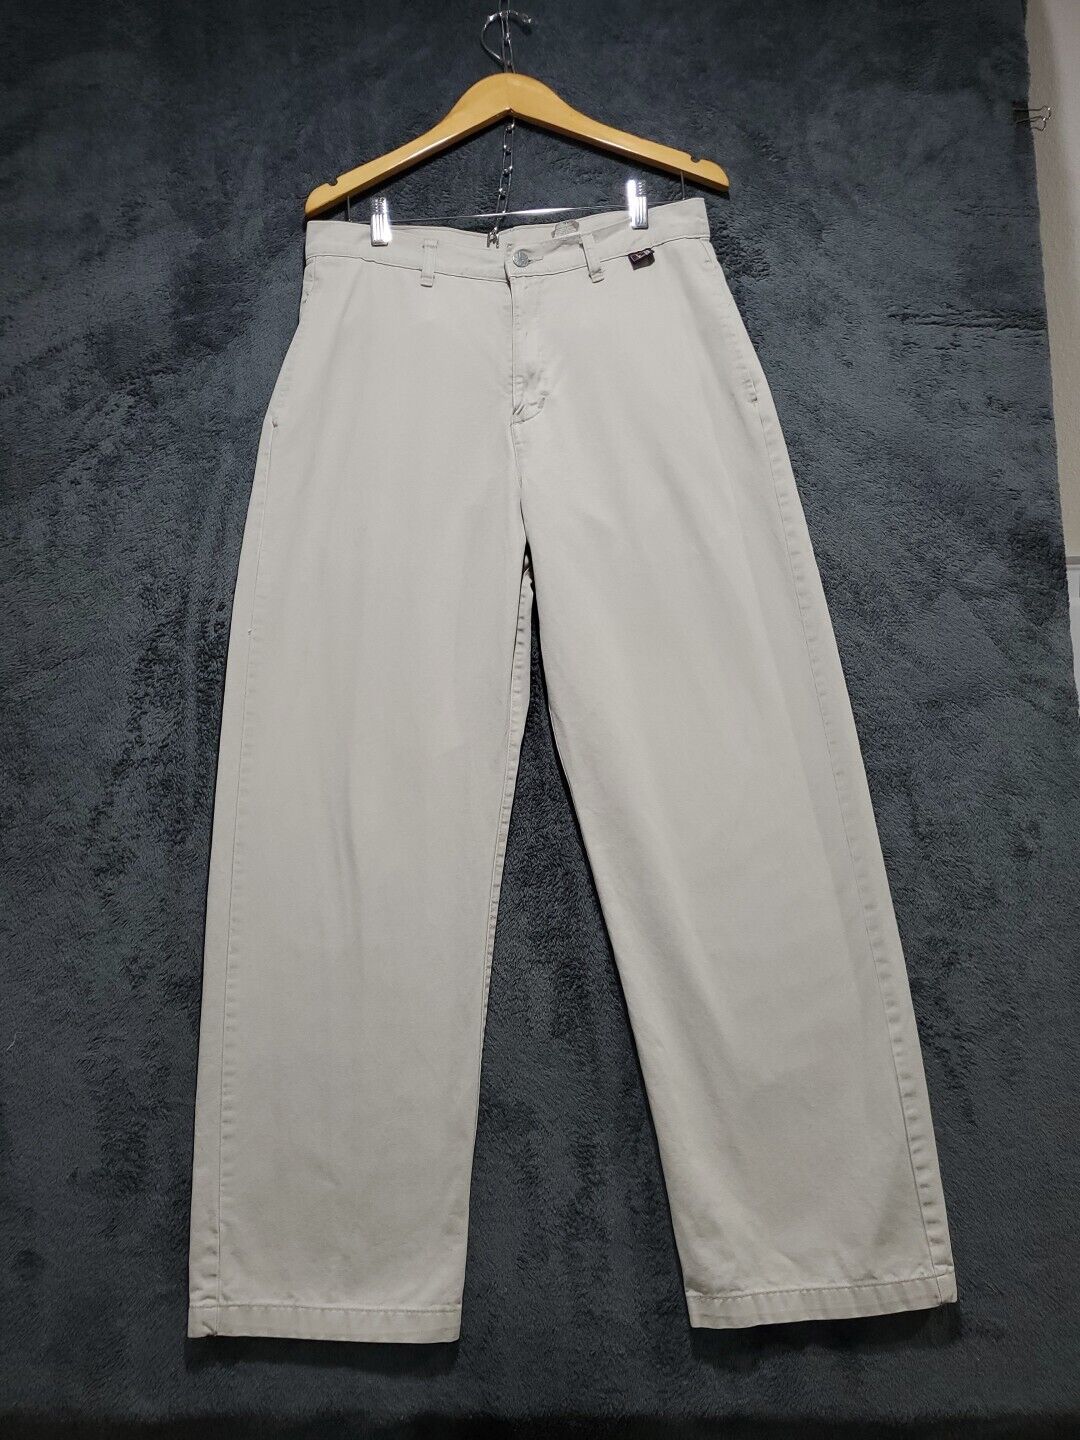 Vintage Levis 1998 L2 Khaki Pants Mens W31 x L32 Beige Tan Loose Fit 90s Y2K